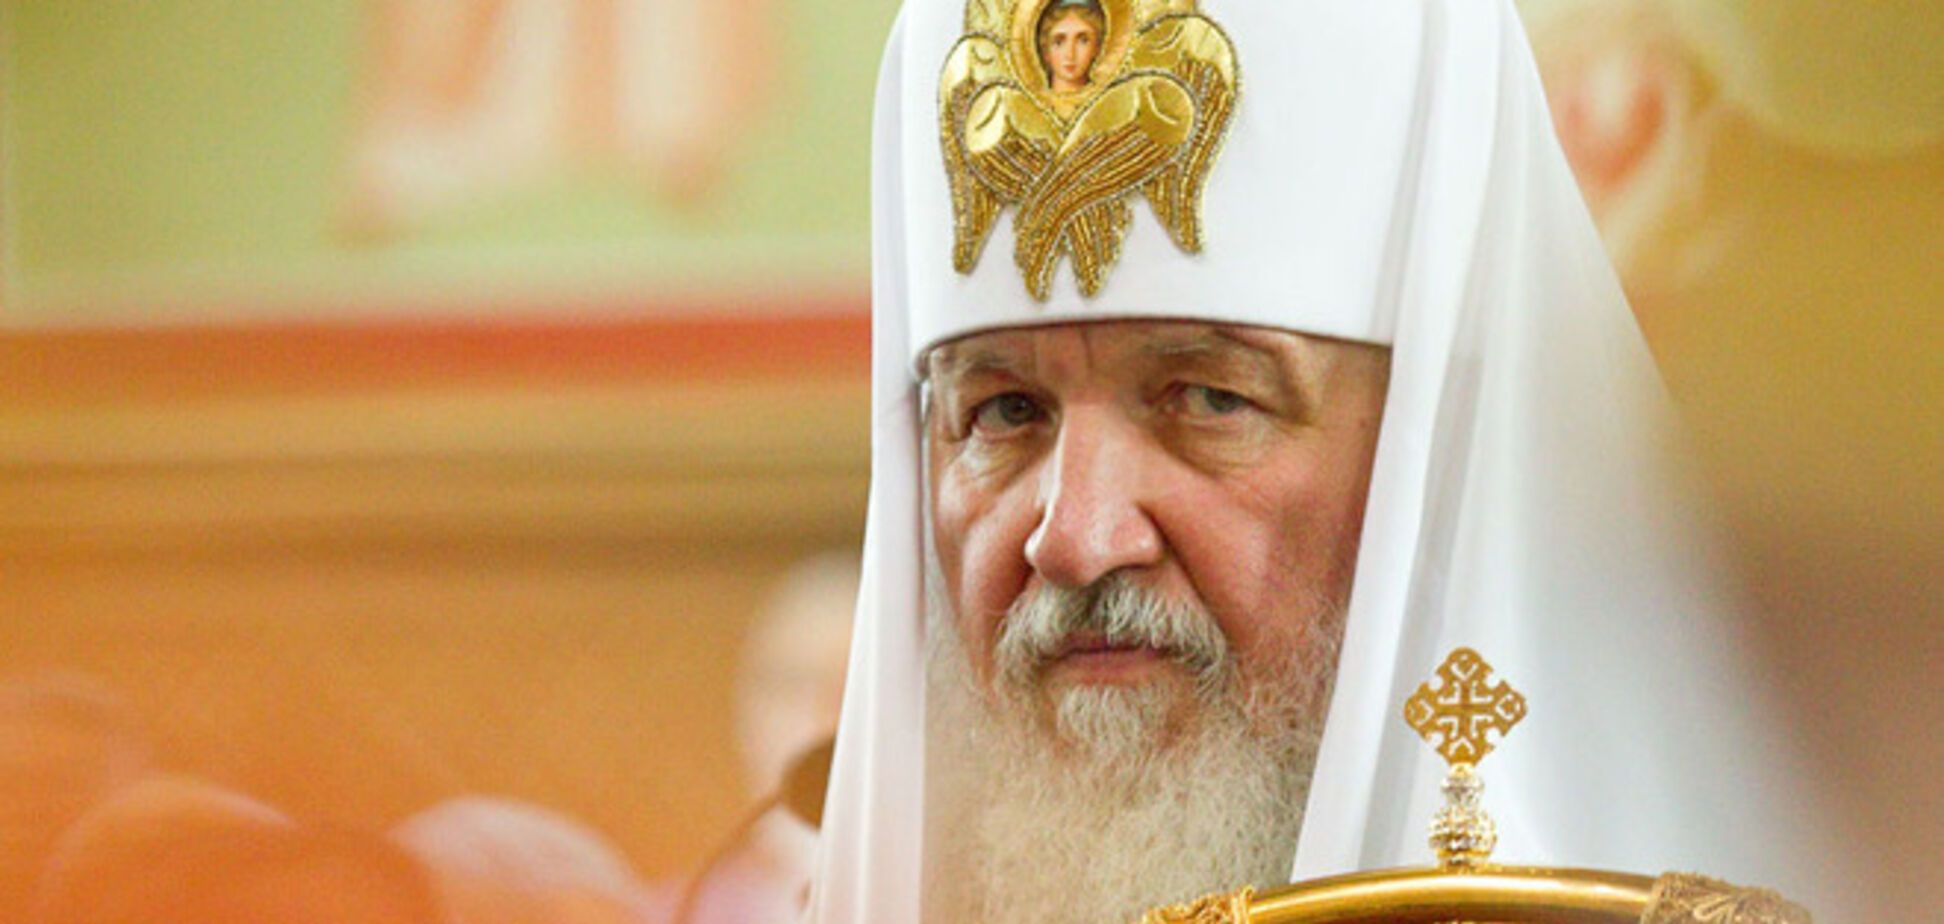 УПЦ КП: в Україні готується церковний переворот 